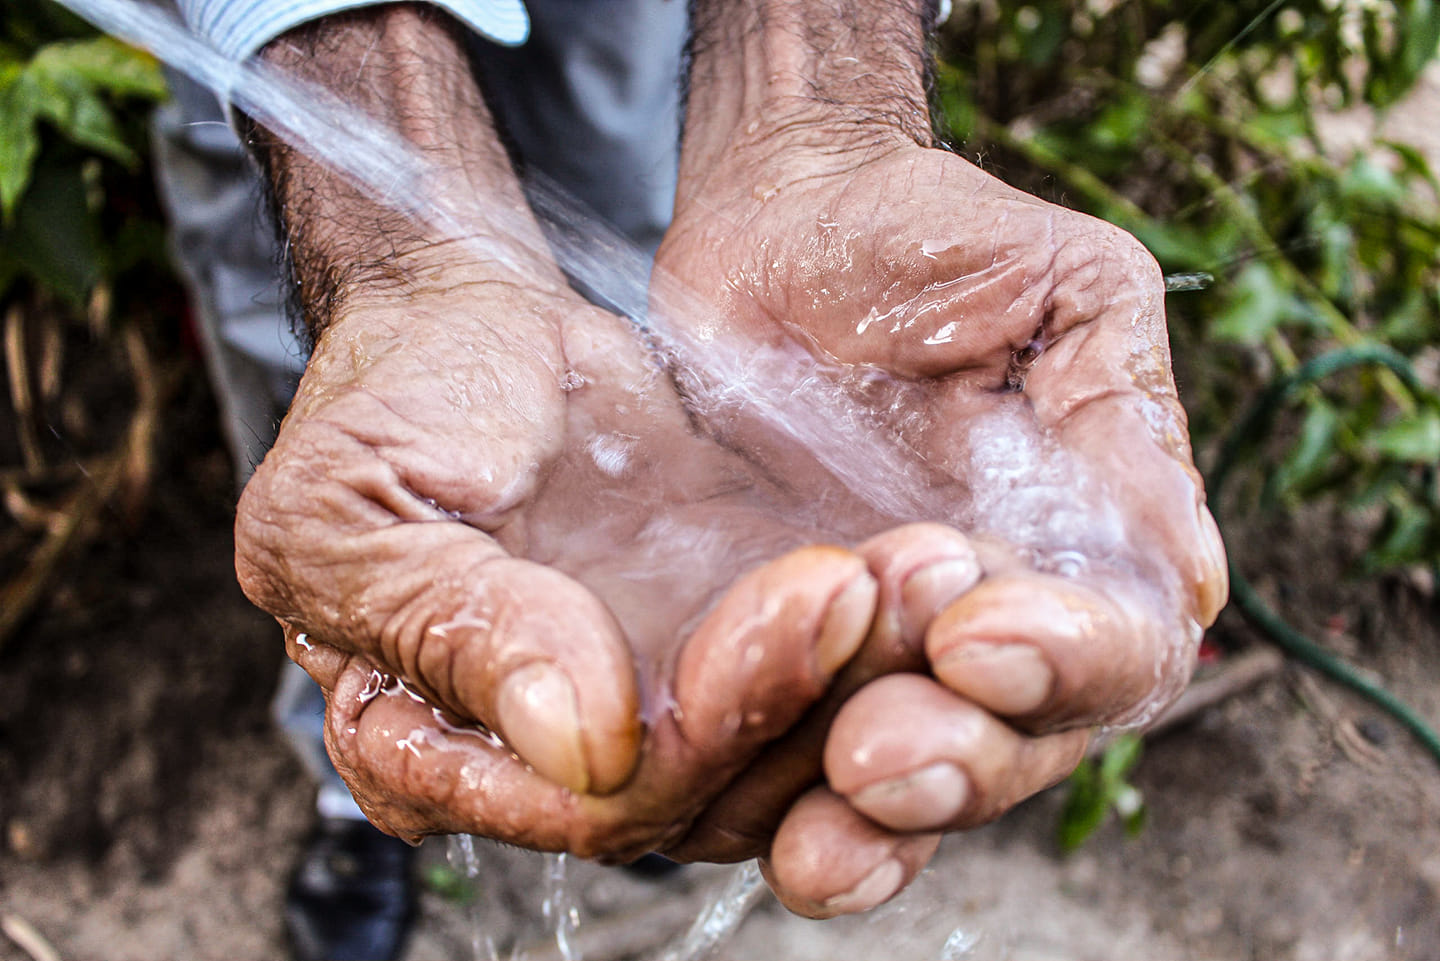 foto de mãos sendo molhadas por água